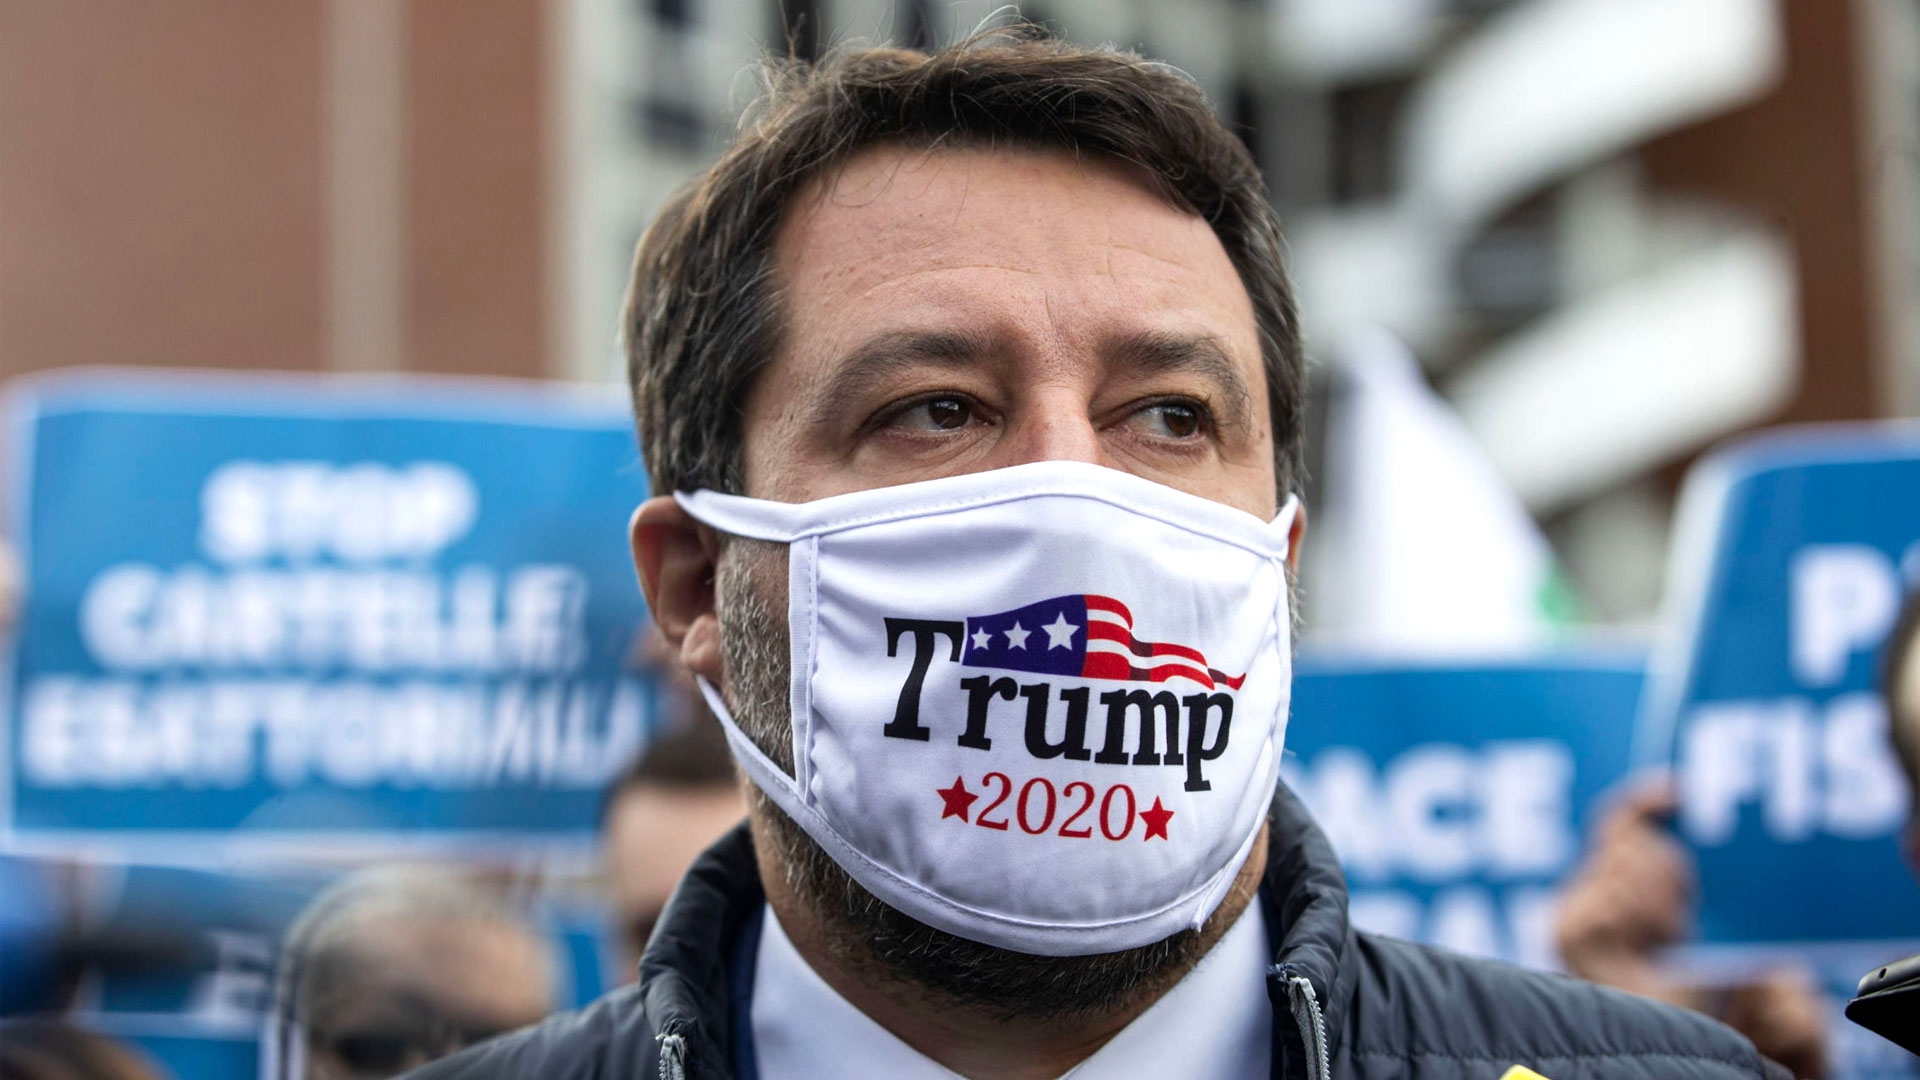 Salvini con una mascarilla en apoyo a la campaña de Trump 2020